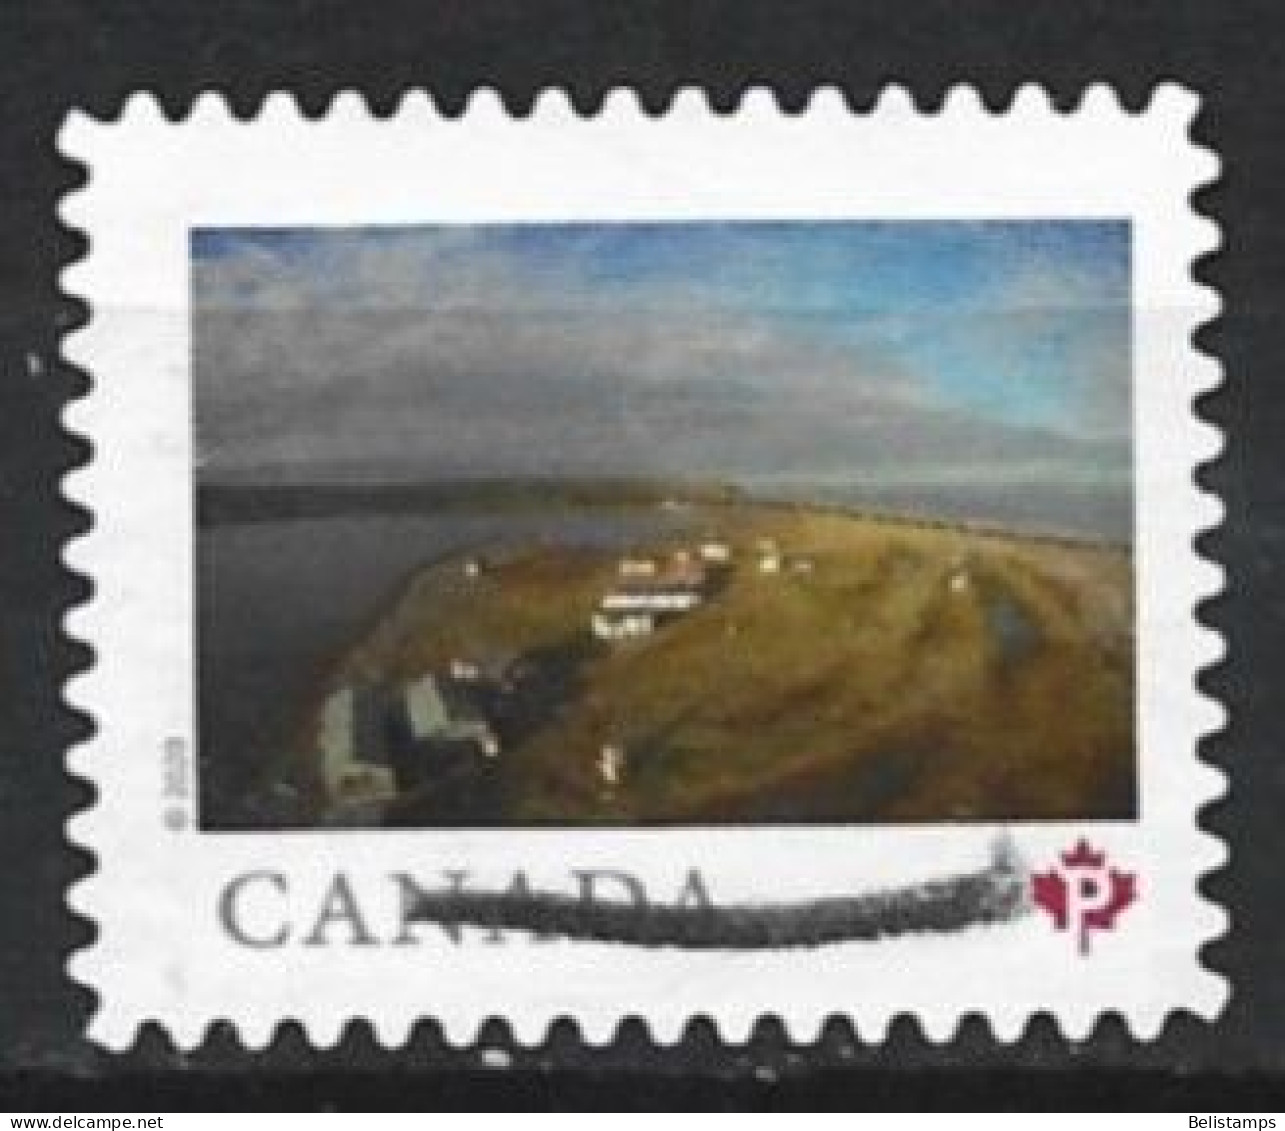 Canada 2020. Scott #3222 (U) Herschel Island-Qikiqtaruk Territorial Park, Yukon - Gebruikt